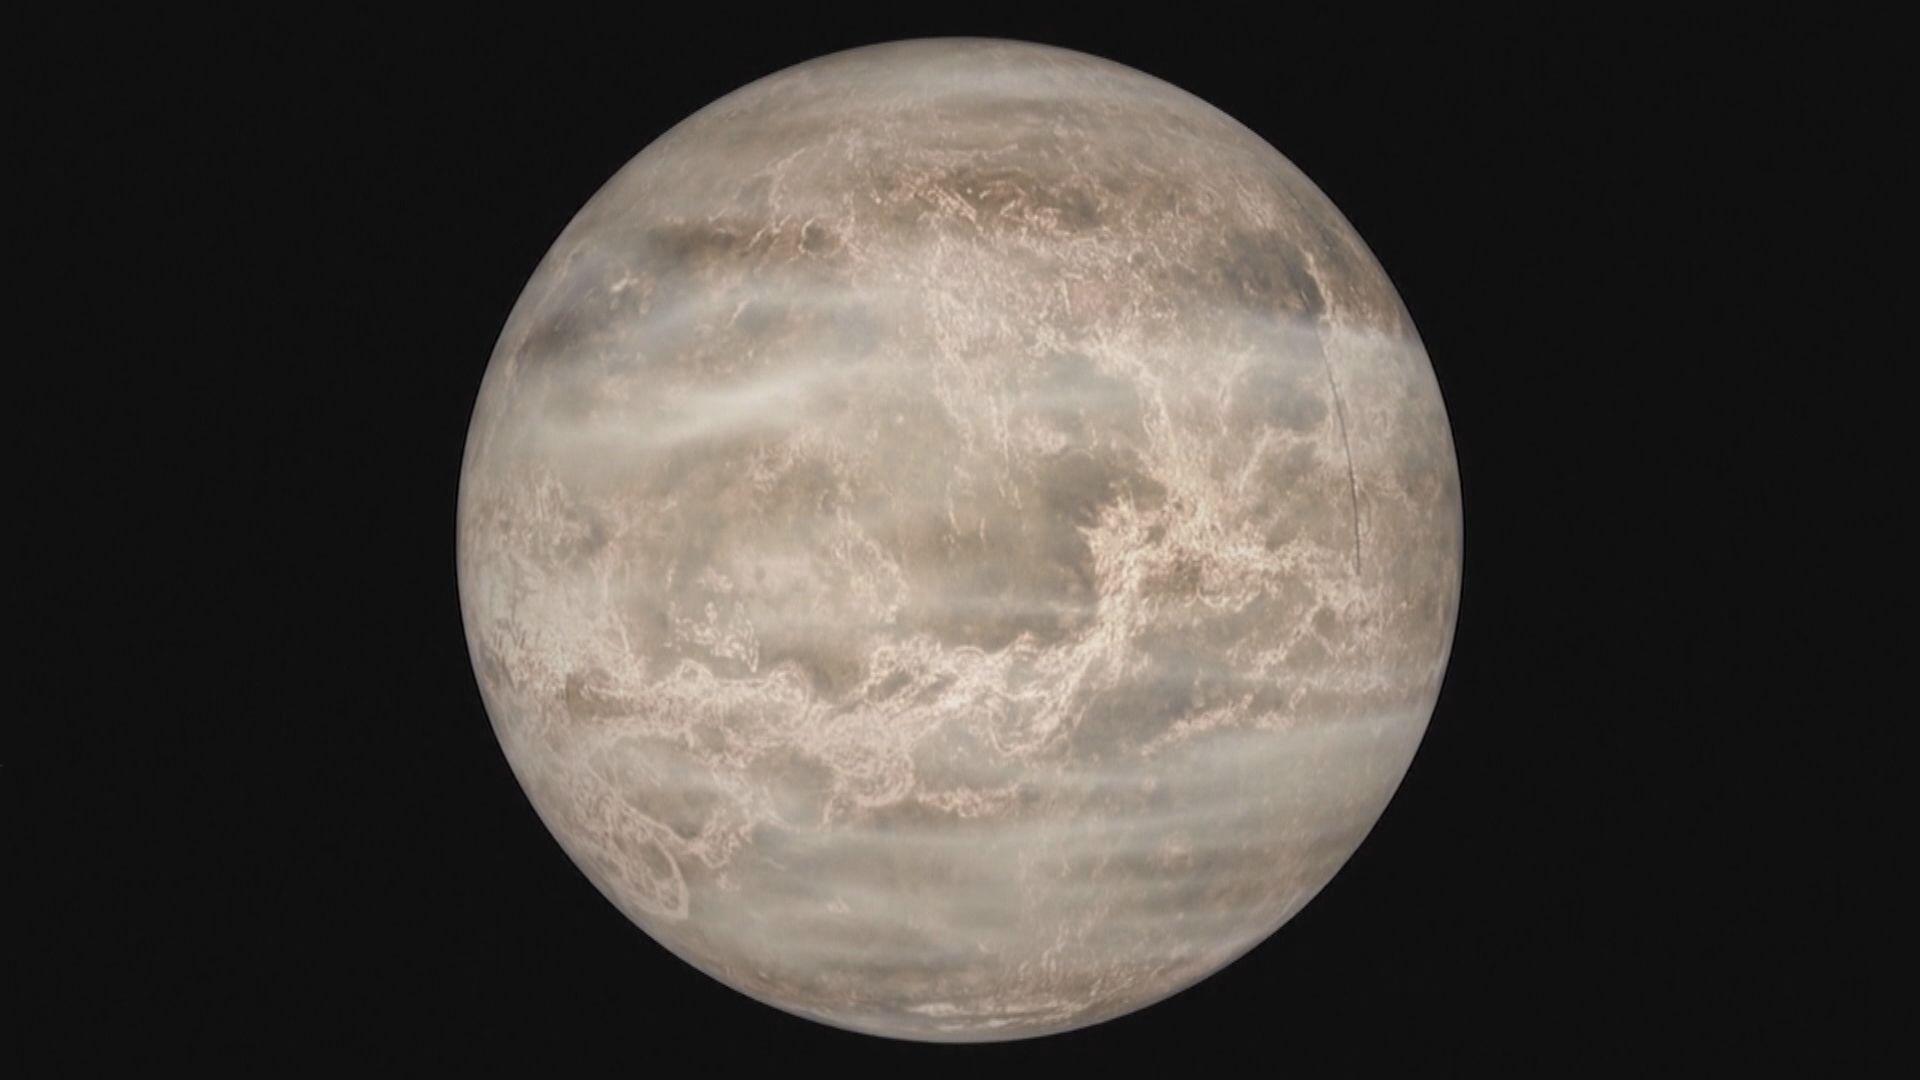 【環球薈報】金星雲層發現磷化氫　科學家正研究是否有生命